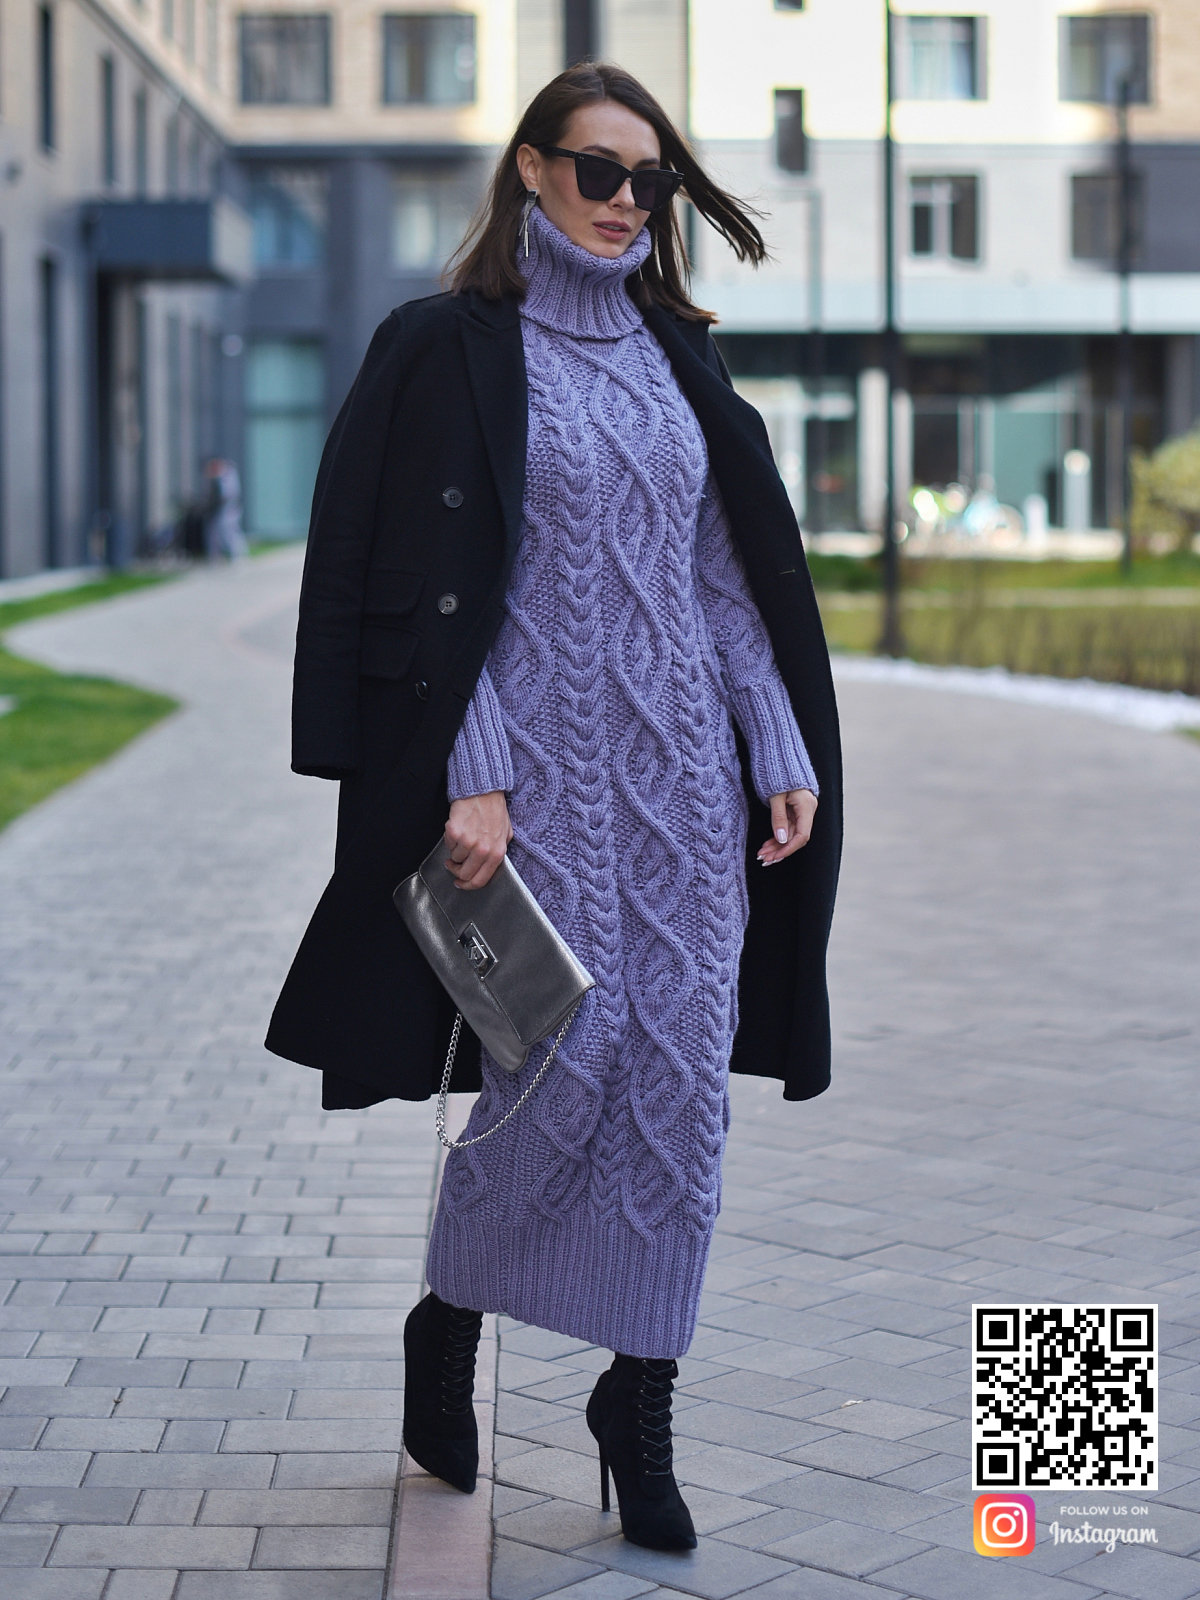 На четвертой фотографии сиреневое вязаное платье в косах в интернет-магазине связанной одежды ручной работы Shapar.